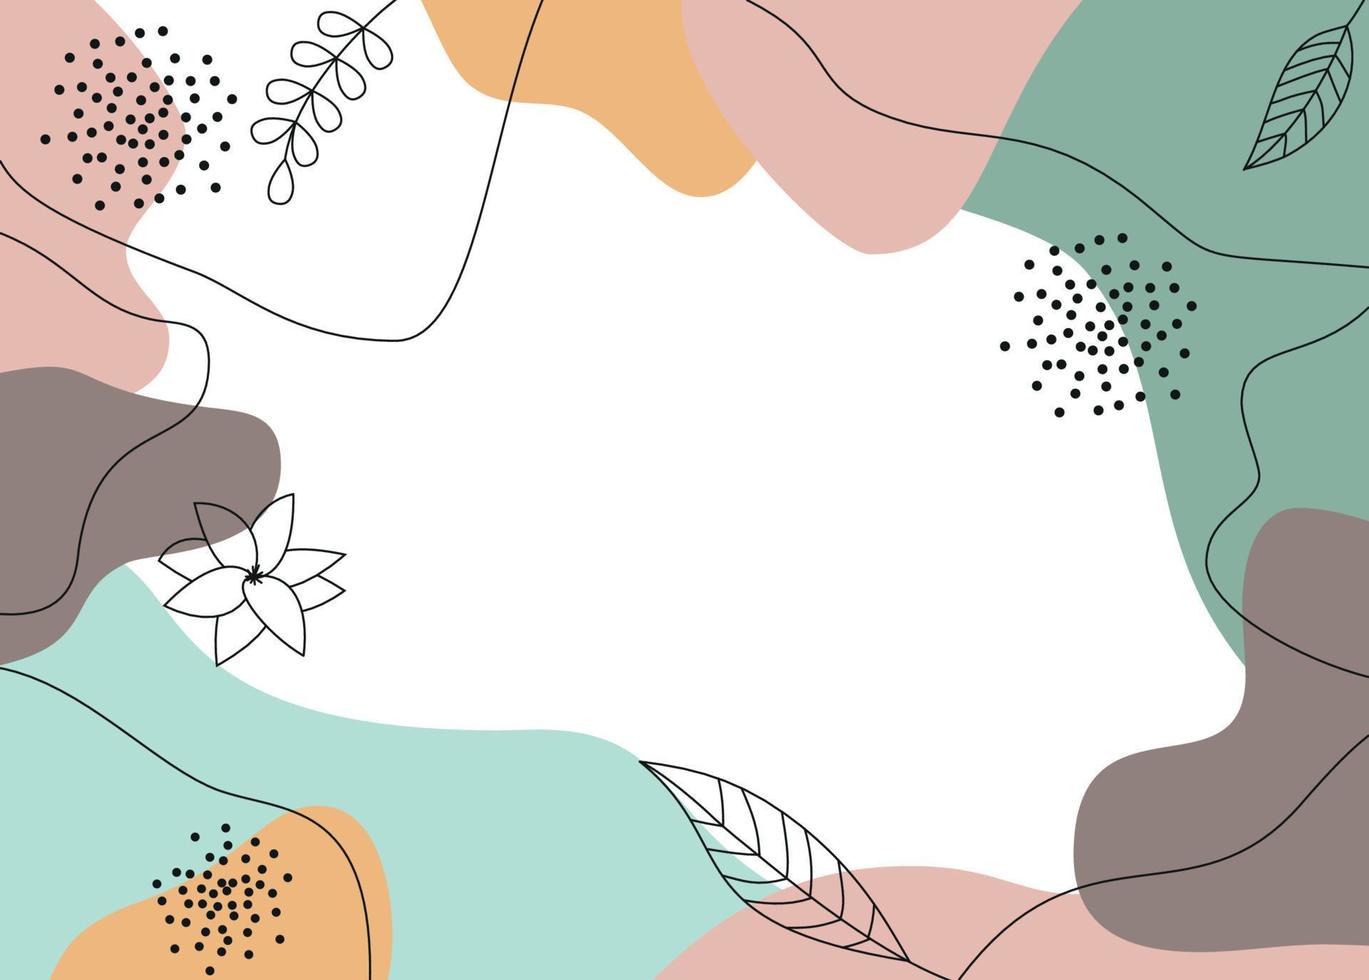 modelo de histórias com fundo moderno abstrato doodle com formas orgânicas fluidas, design minimalista colors.trendy pastel. vetor